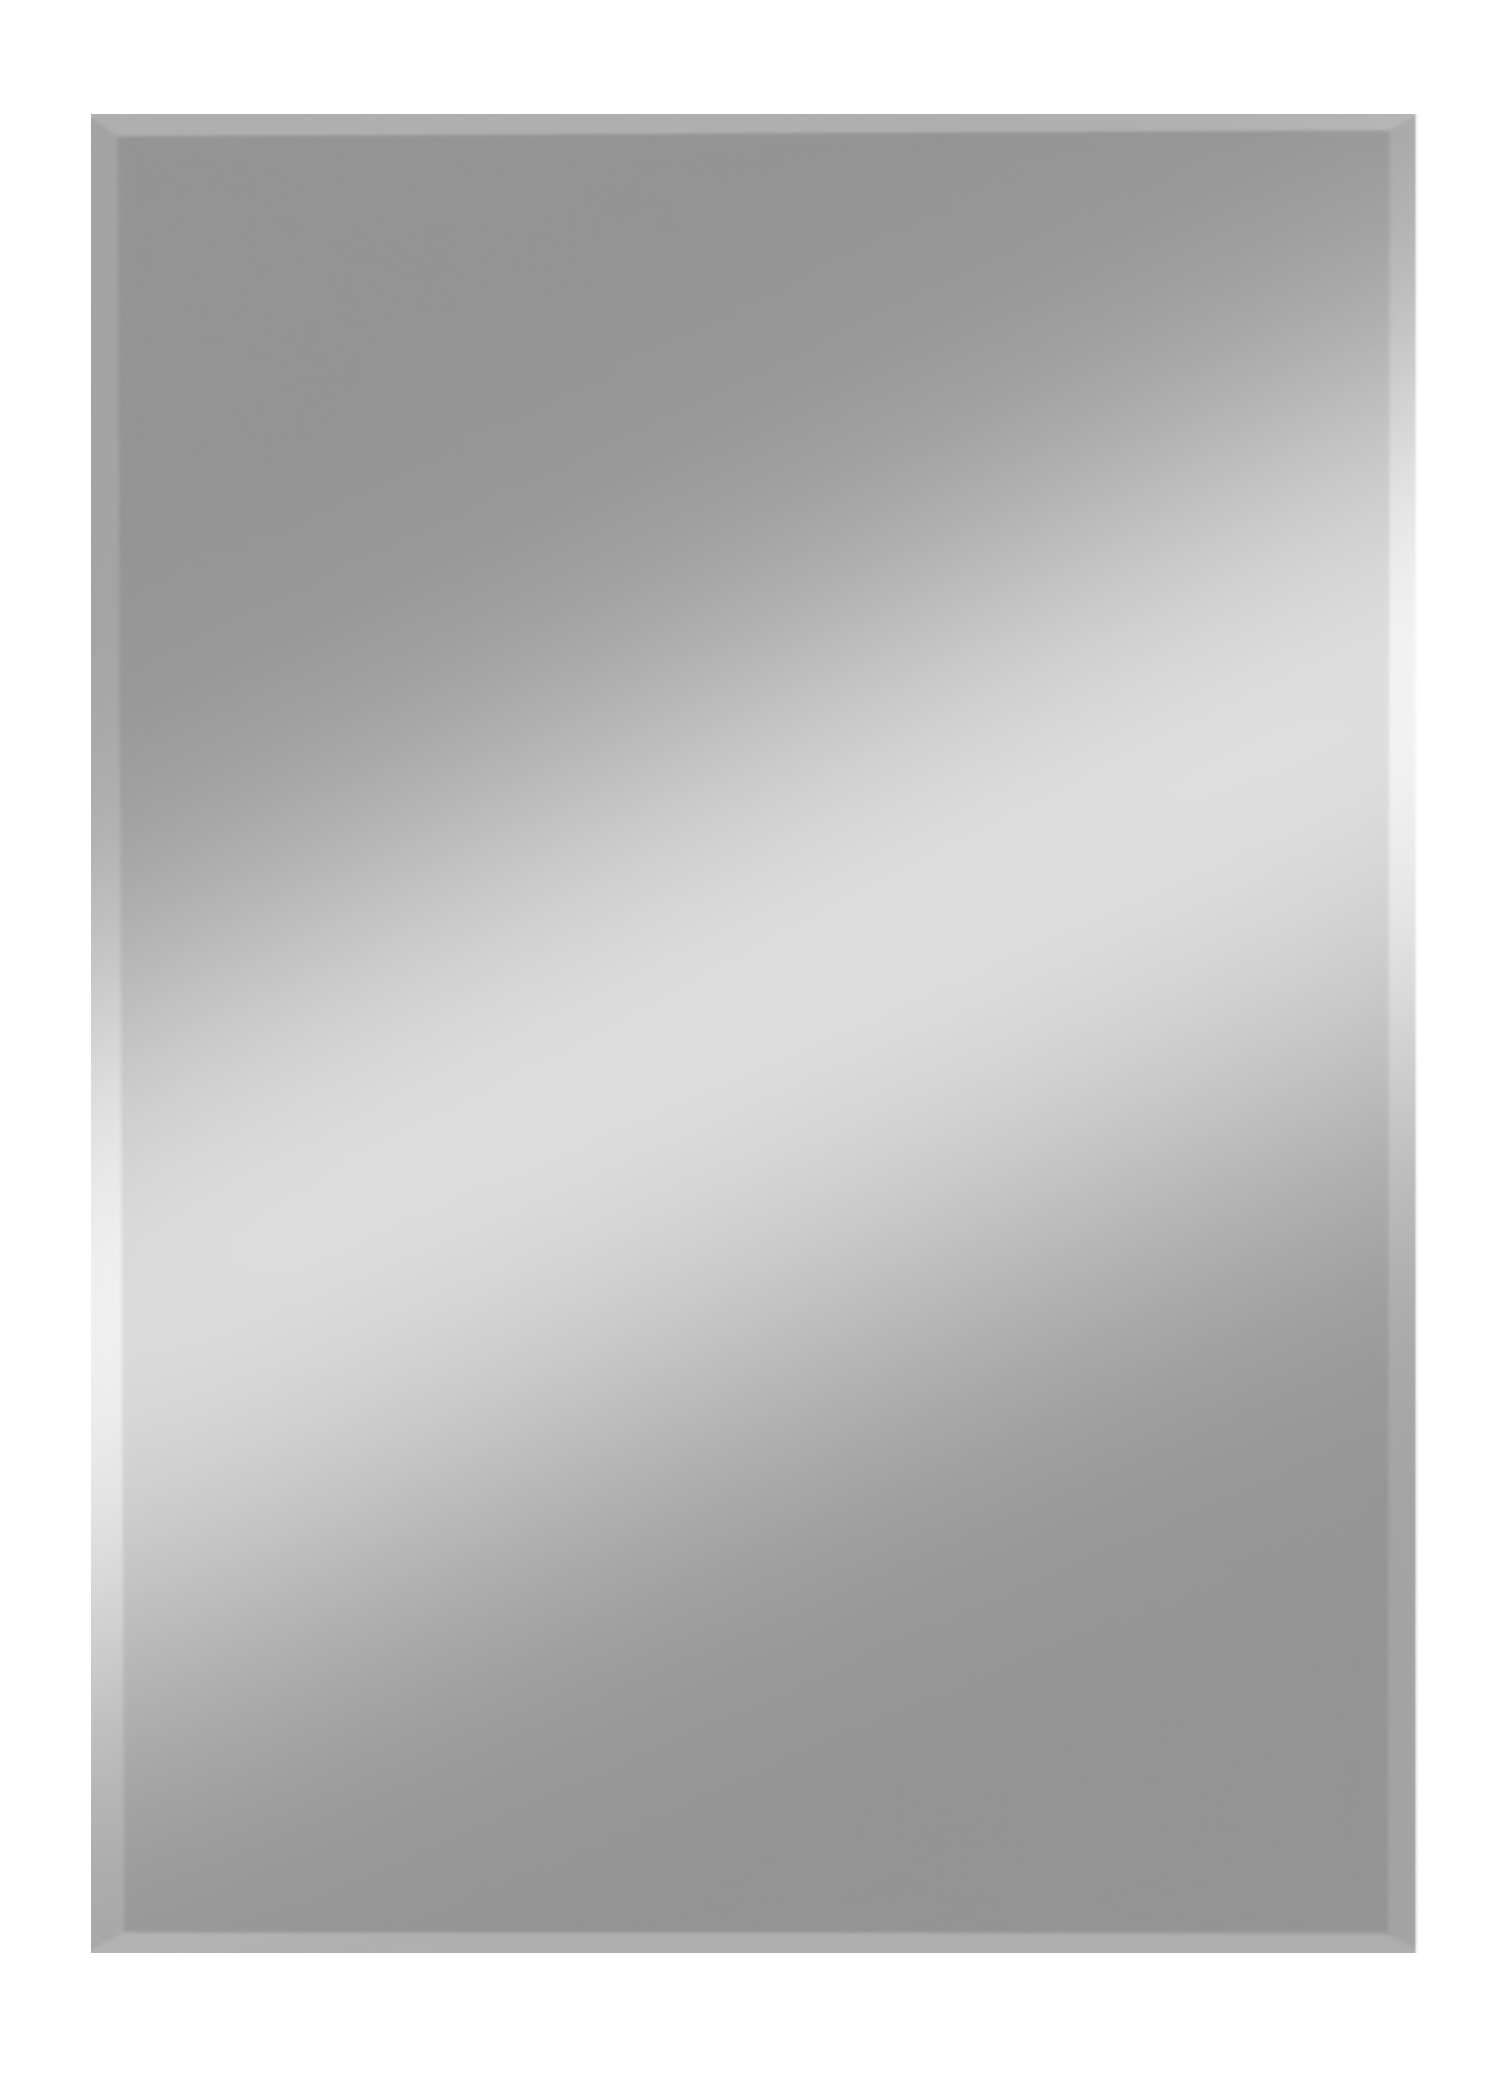 Spiegel Gennil 40 x 60 cm, inkl. Aufhängung